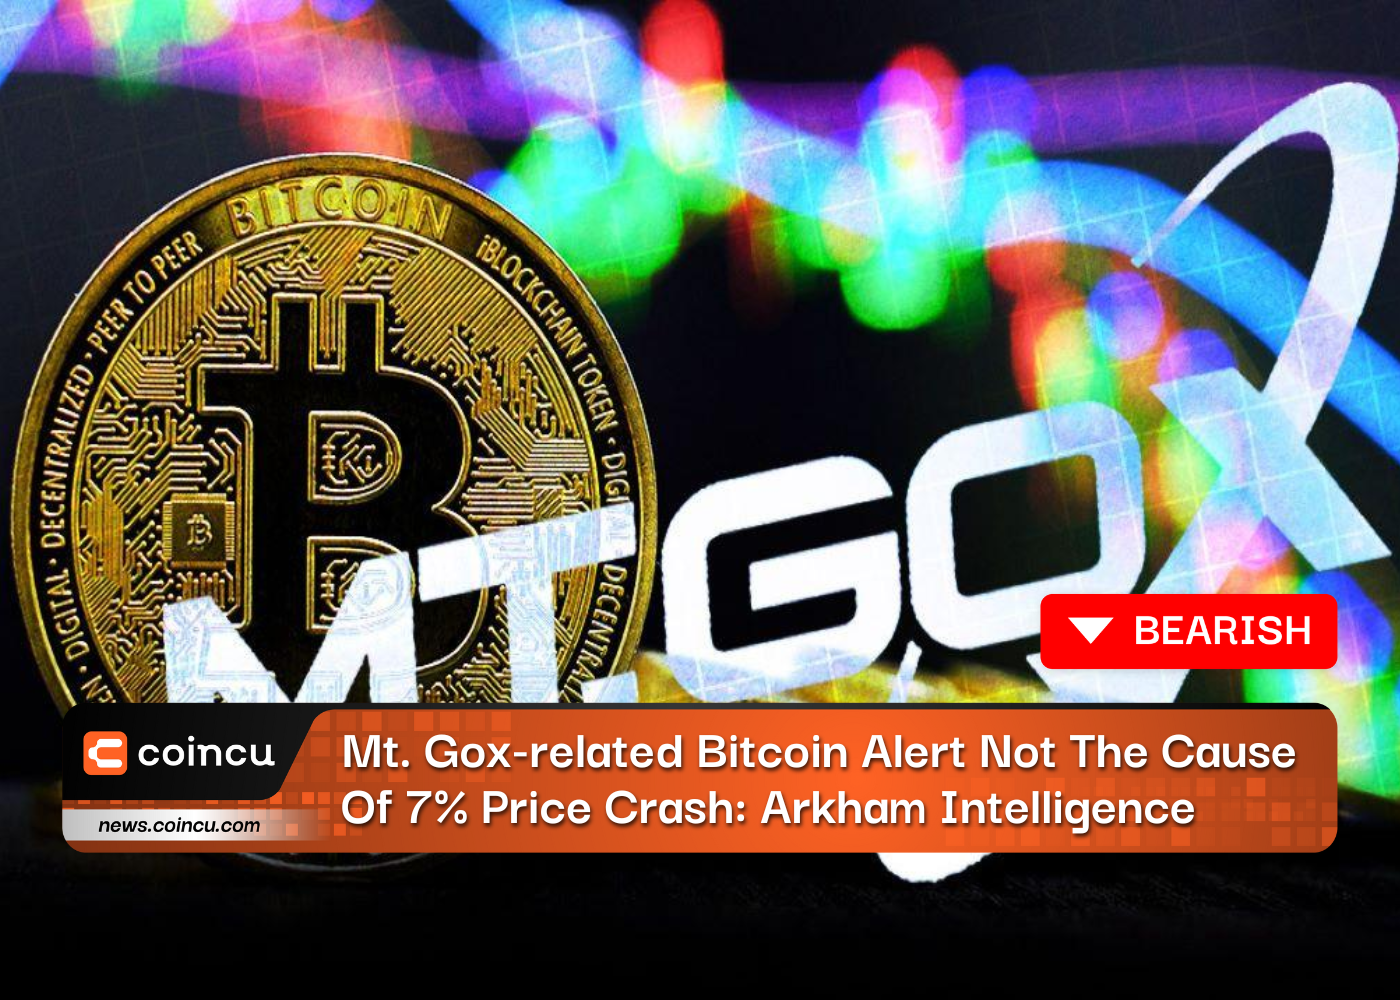 Cảnh báo Bitcoin liên quan đến Mt. Gox không phải là nguyên nhân gây ra sự cố giá 7%: Arkham Intelligence